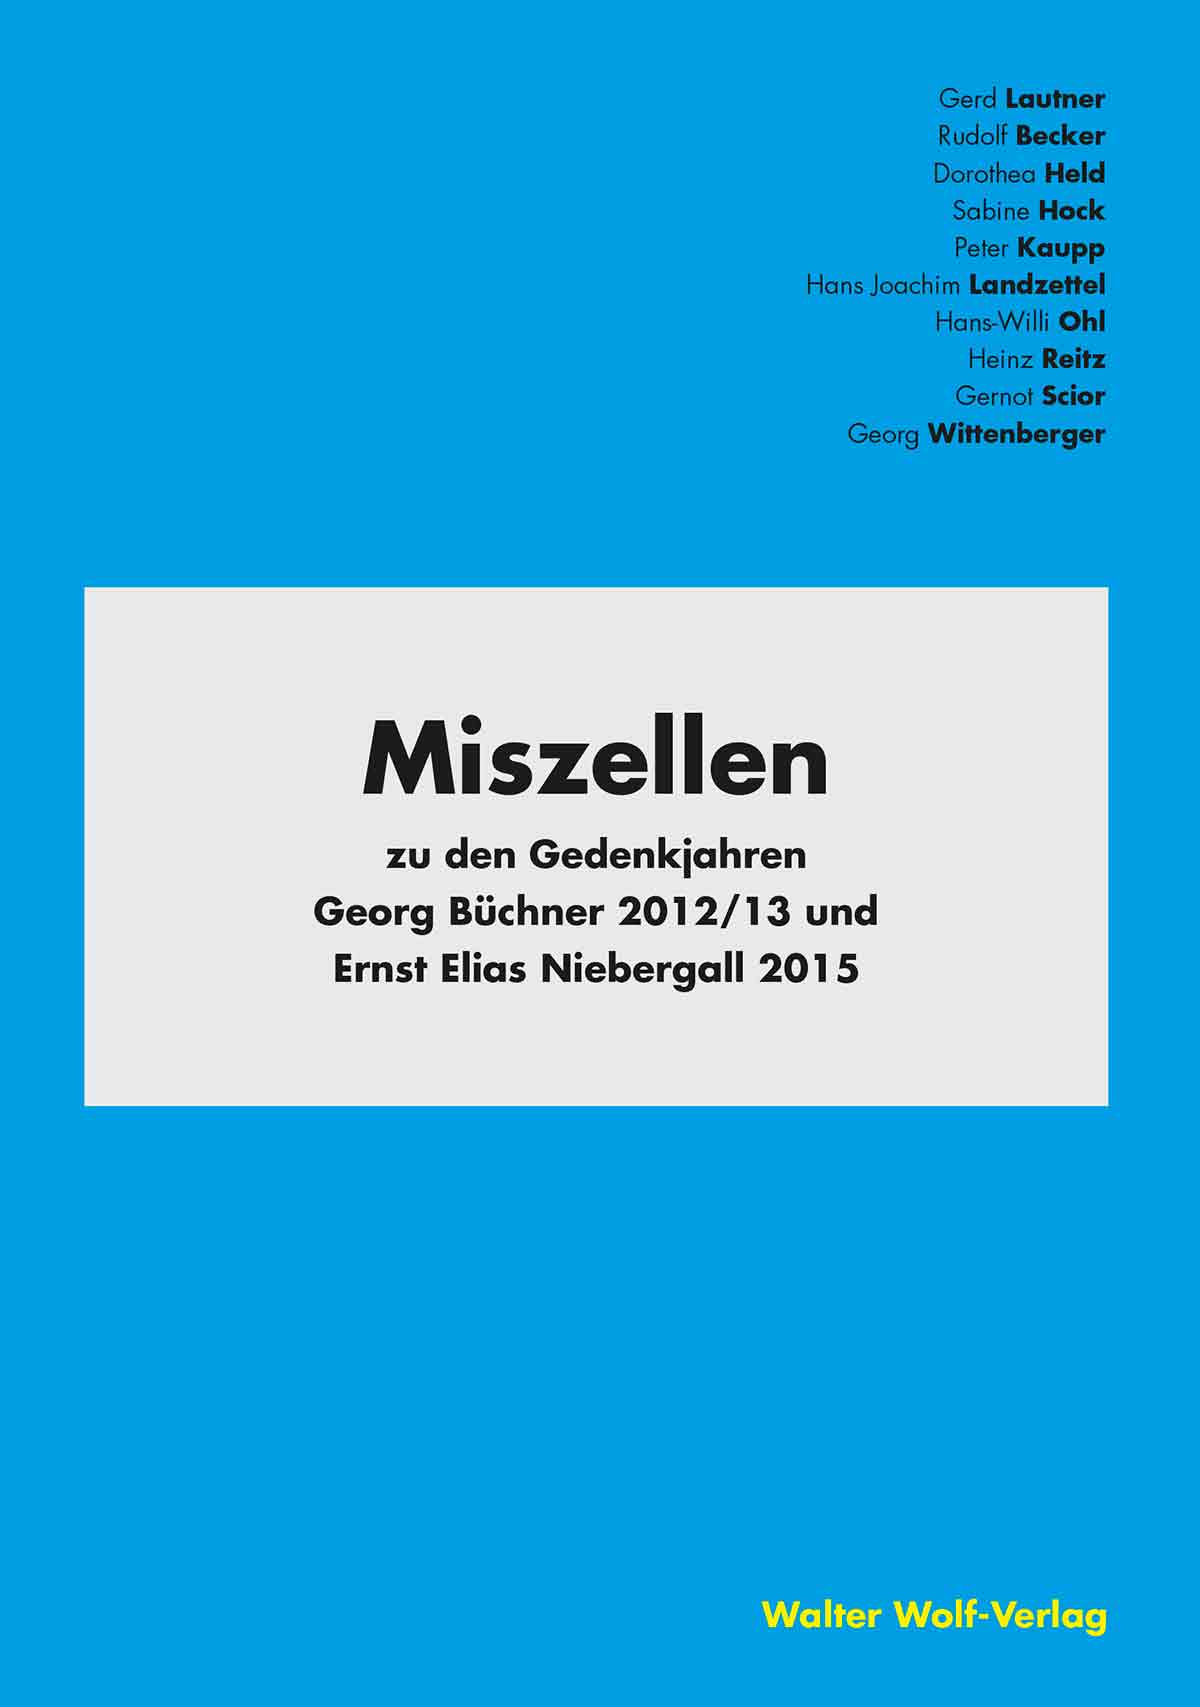 Publikation im Walter Wolf Verlag zu den Gedenkjahren Georg Büchner 2012/13 und Ernst Elias Niebergall 2015. 